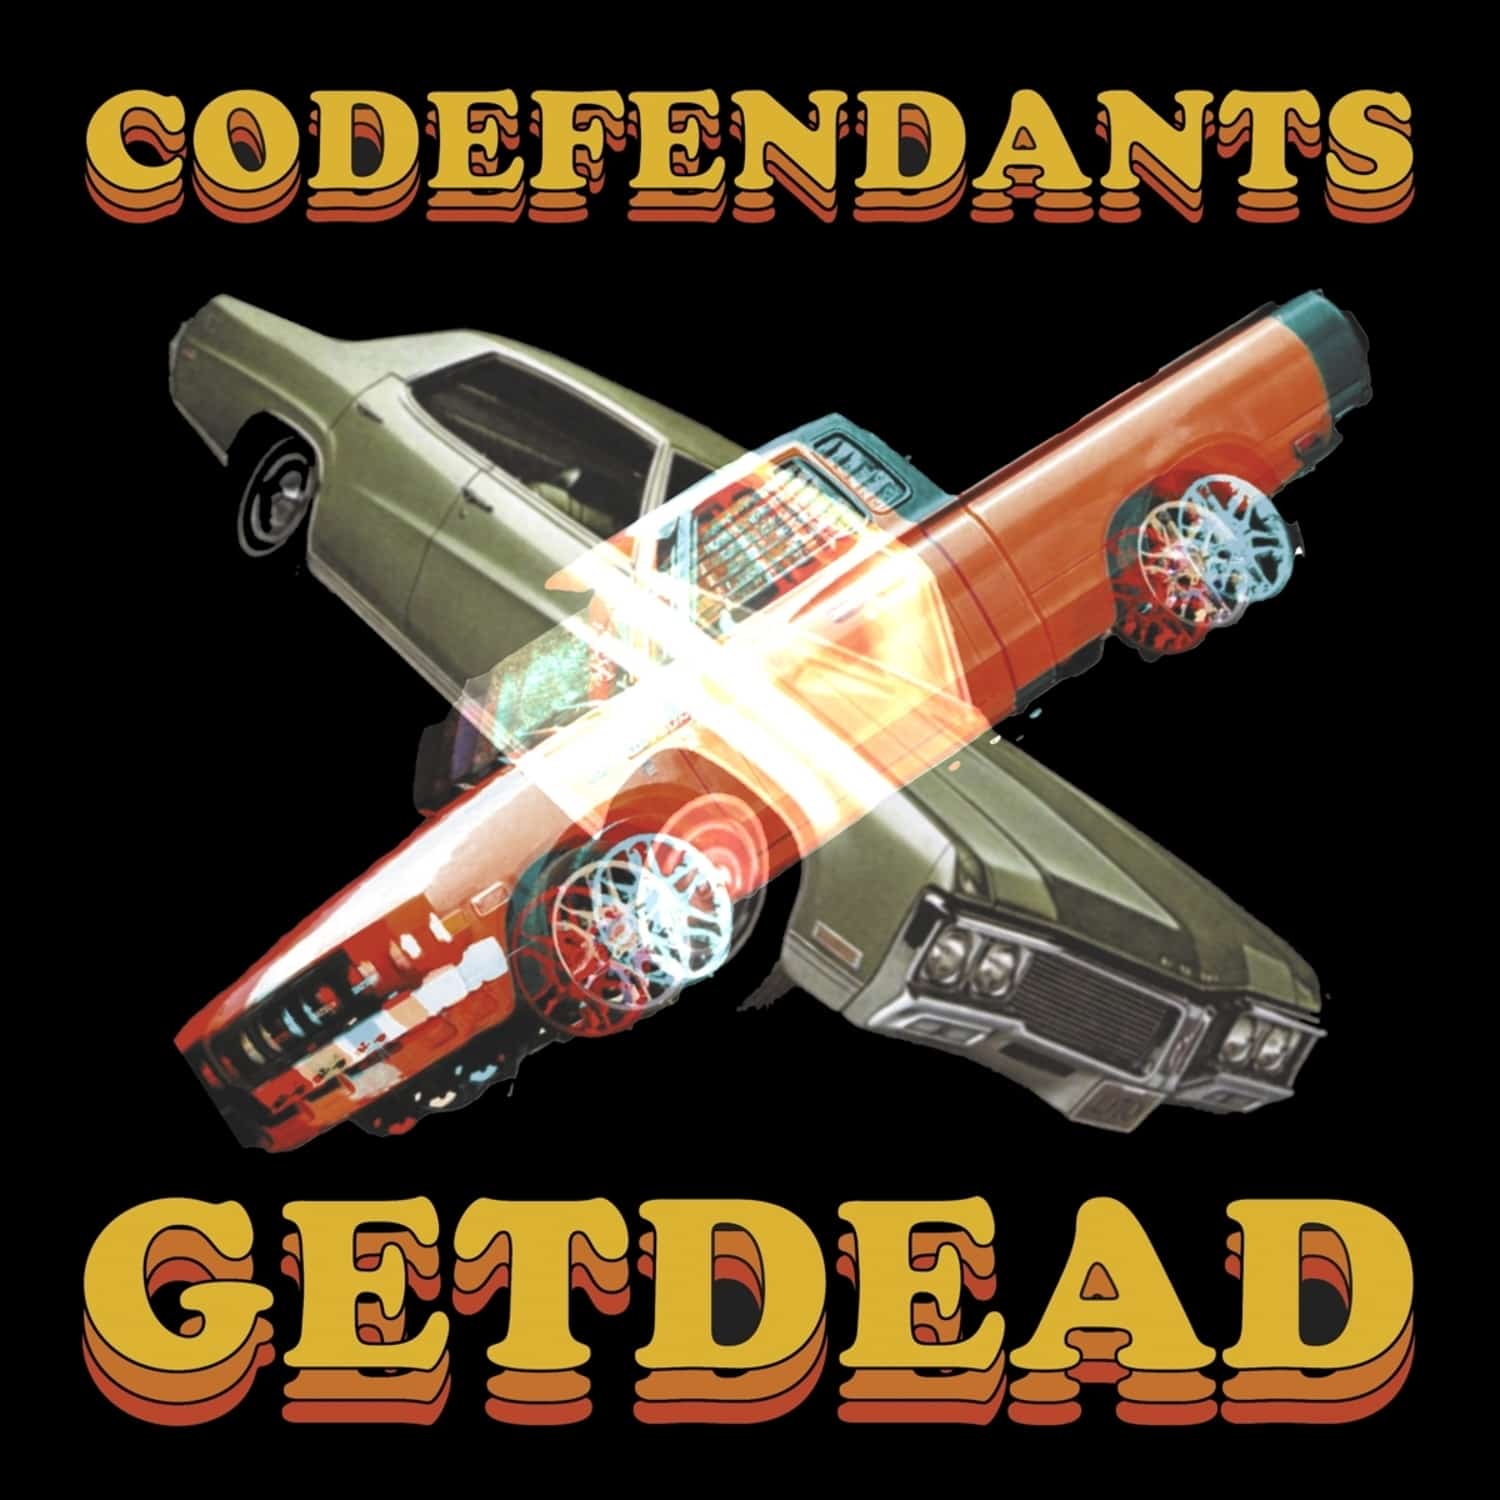 Codefendants / Get Dead - CODEFENDANTS X GET DEAD 